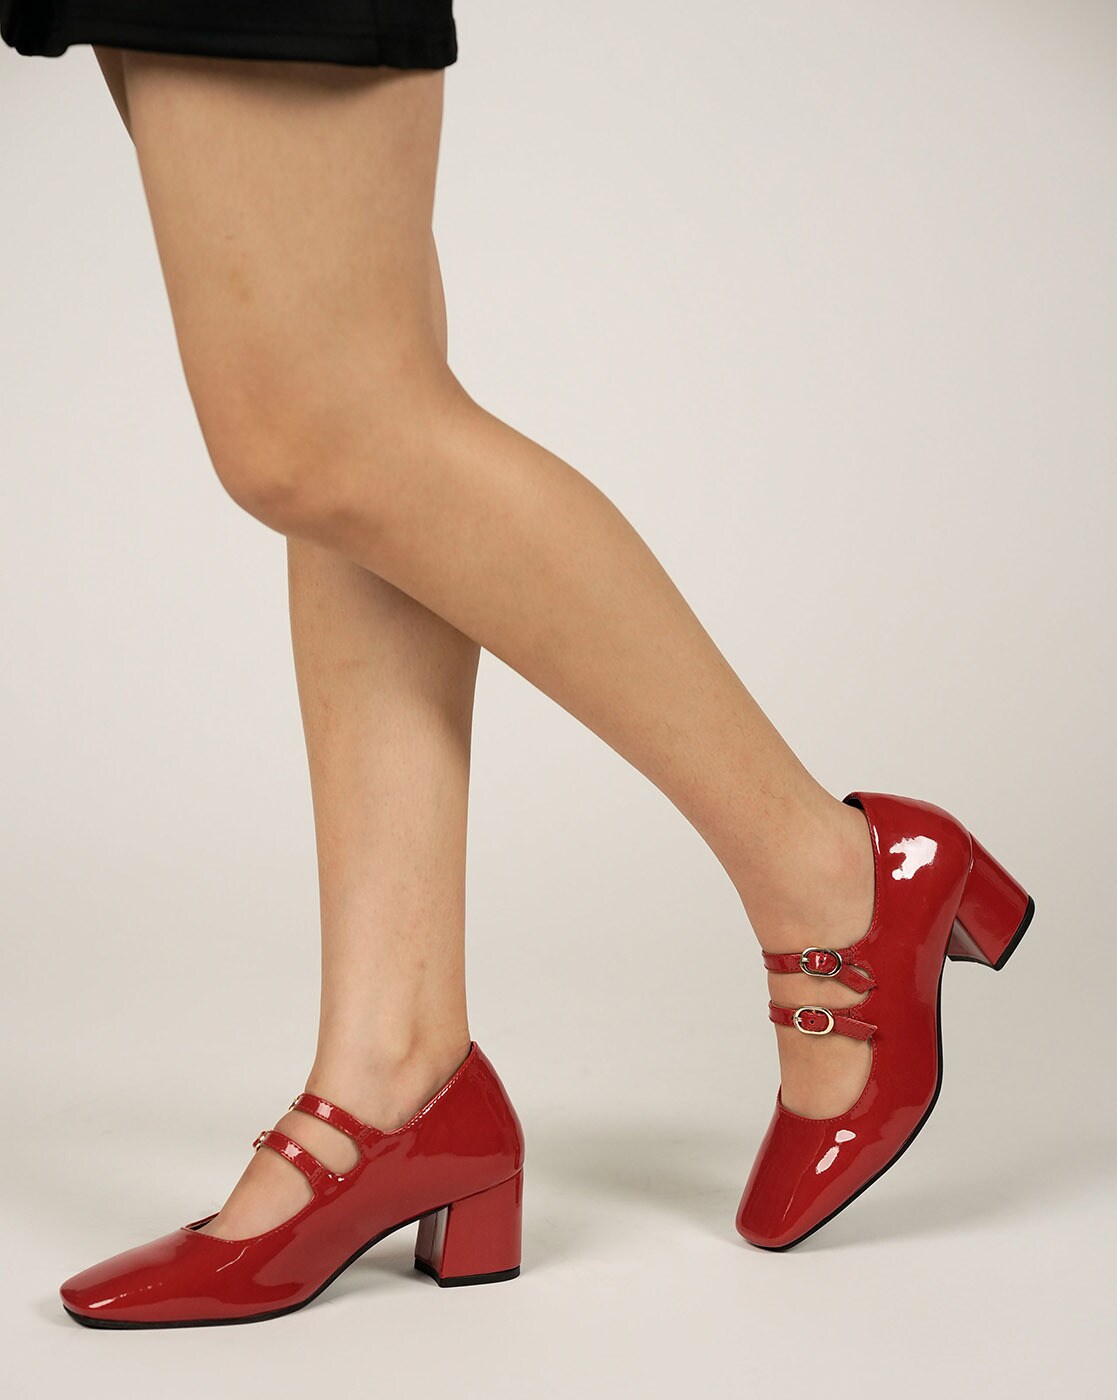 Women's Red Ankle Strap Open Toe Block Heels